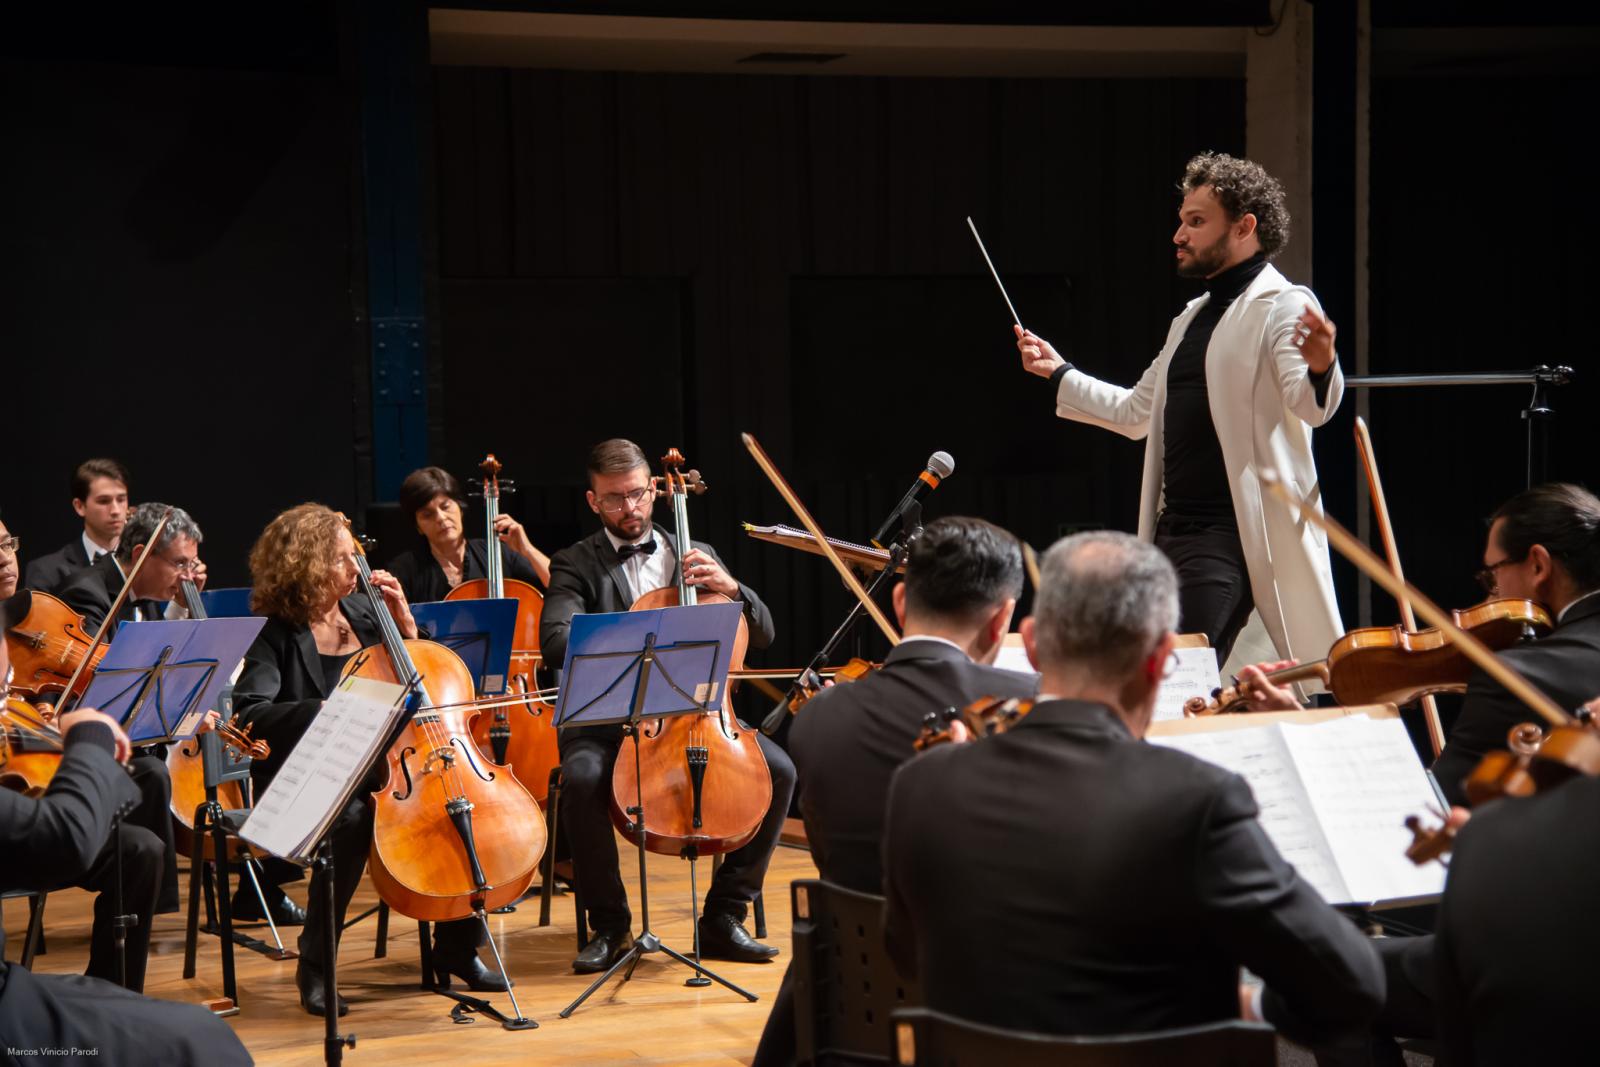 Orquestra Filarmônica Valinhos estreia em Itatiba com o concerto “Brasil de Norte a Sul”